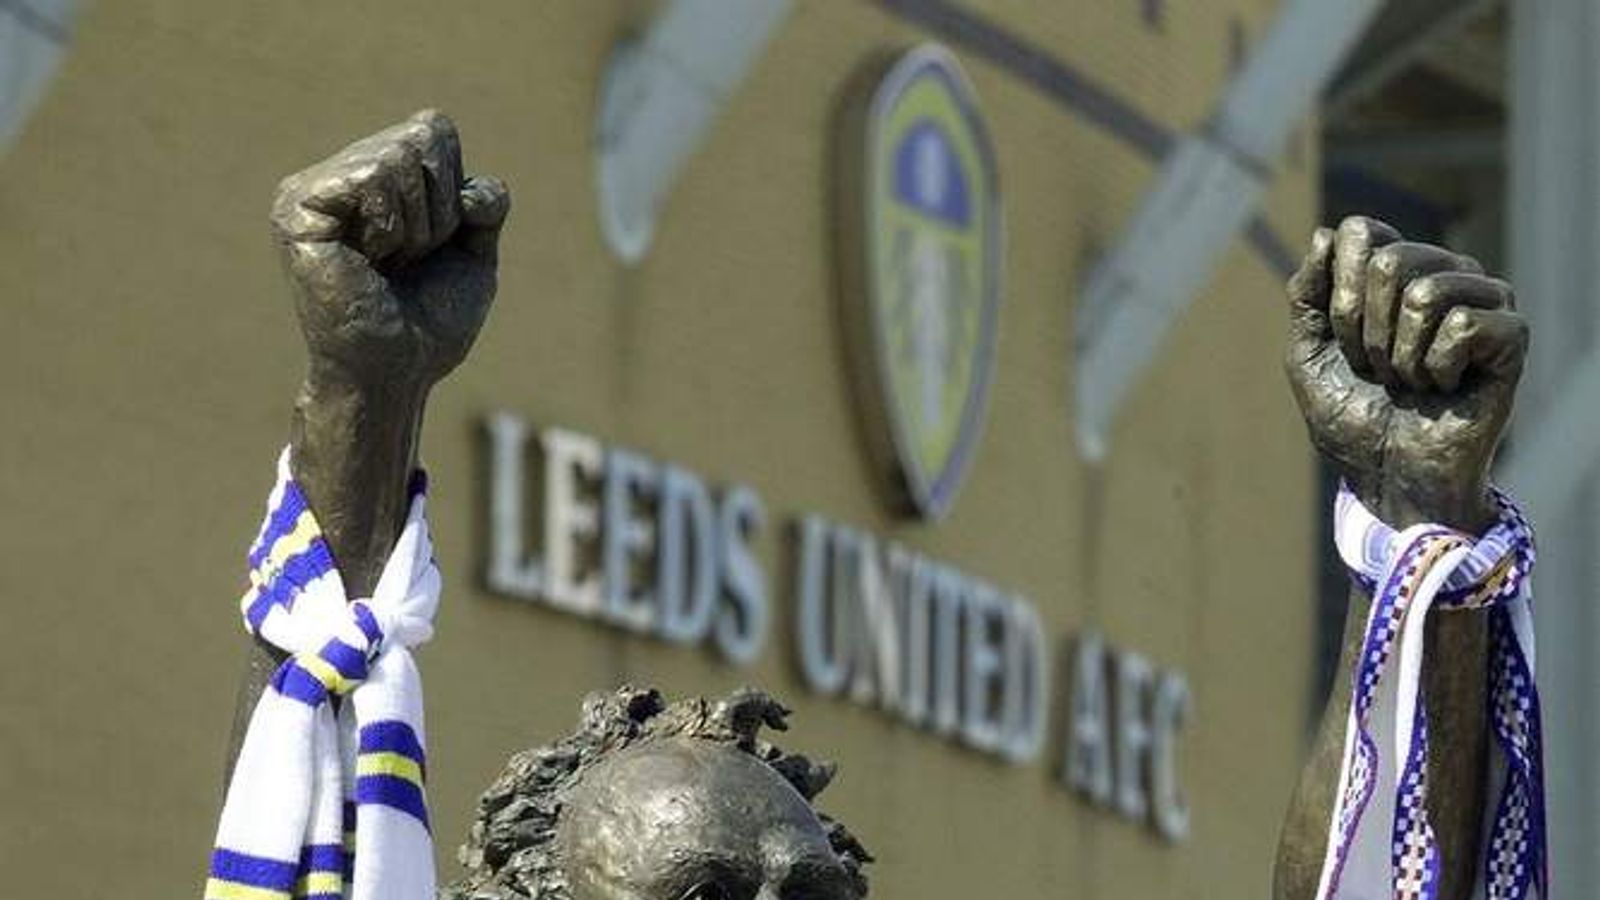 Leeds United: 'Bahrain' Bid For Football Club - Business News - Sky News